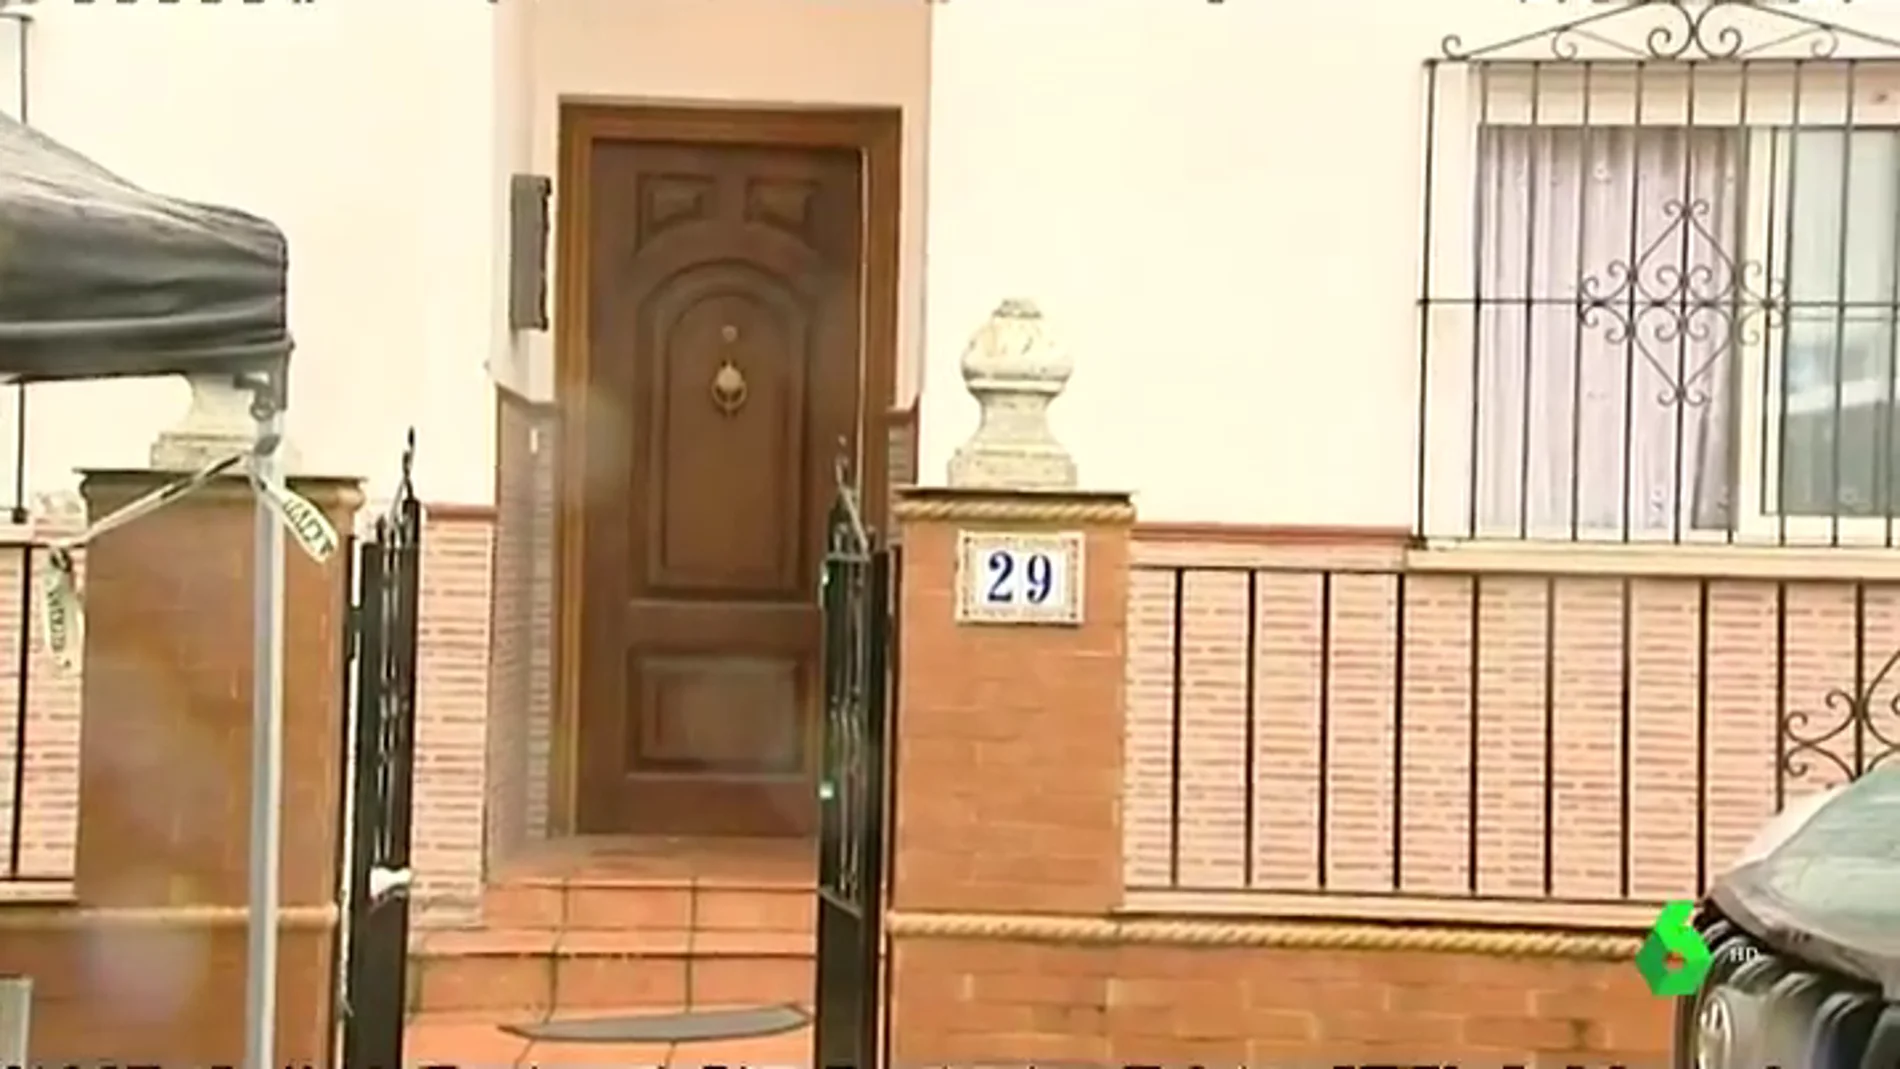 Registran de nuevo el domicilio del presunto asesino de Manuela Chavero en busca de pruebas